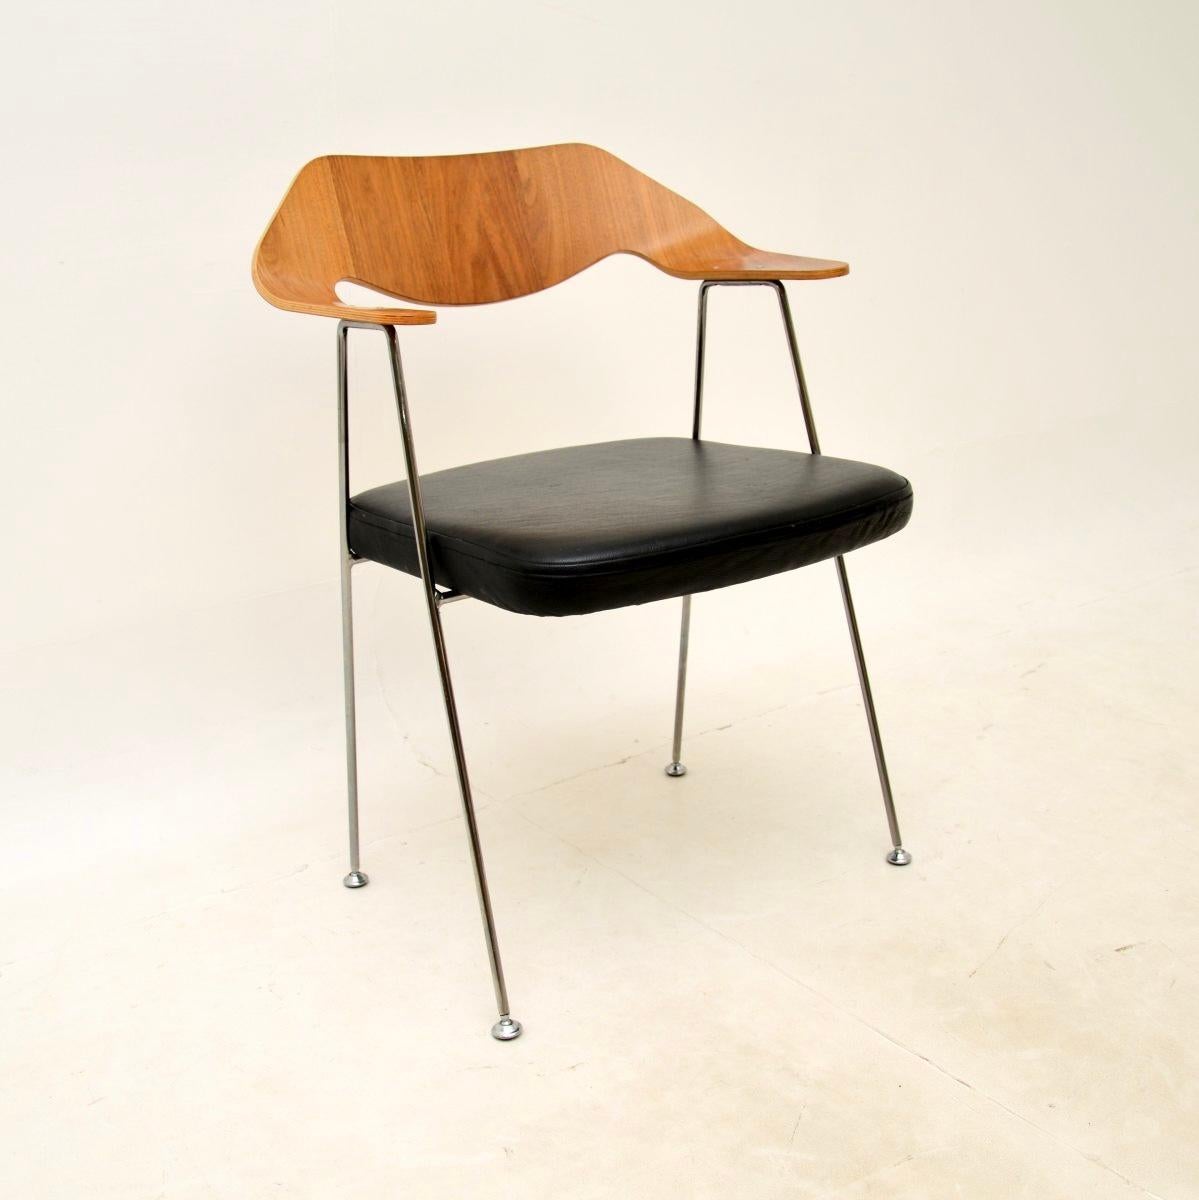 Un ensemble iconique et extrêmement élégant de quatre chaises de salle à manger vintage Robin Day 675. Conçu à l'origine en 1952, cet ensemble a été fabriqué sous licence par Case furniture, il date du 21ème siècle.

Il s'agit d'un design